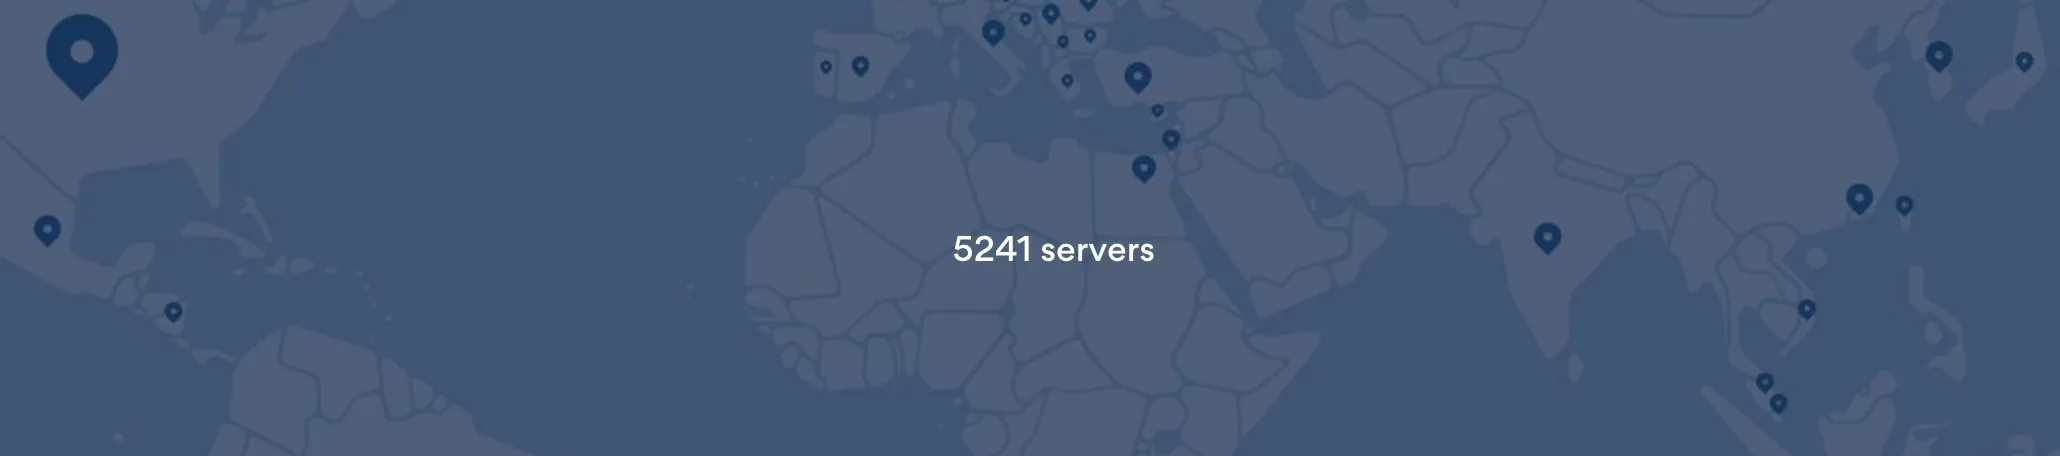 Статистика VPN серверов